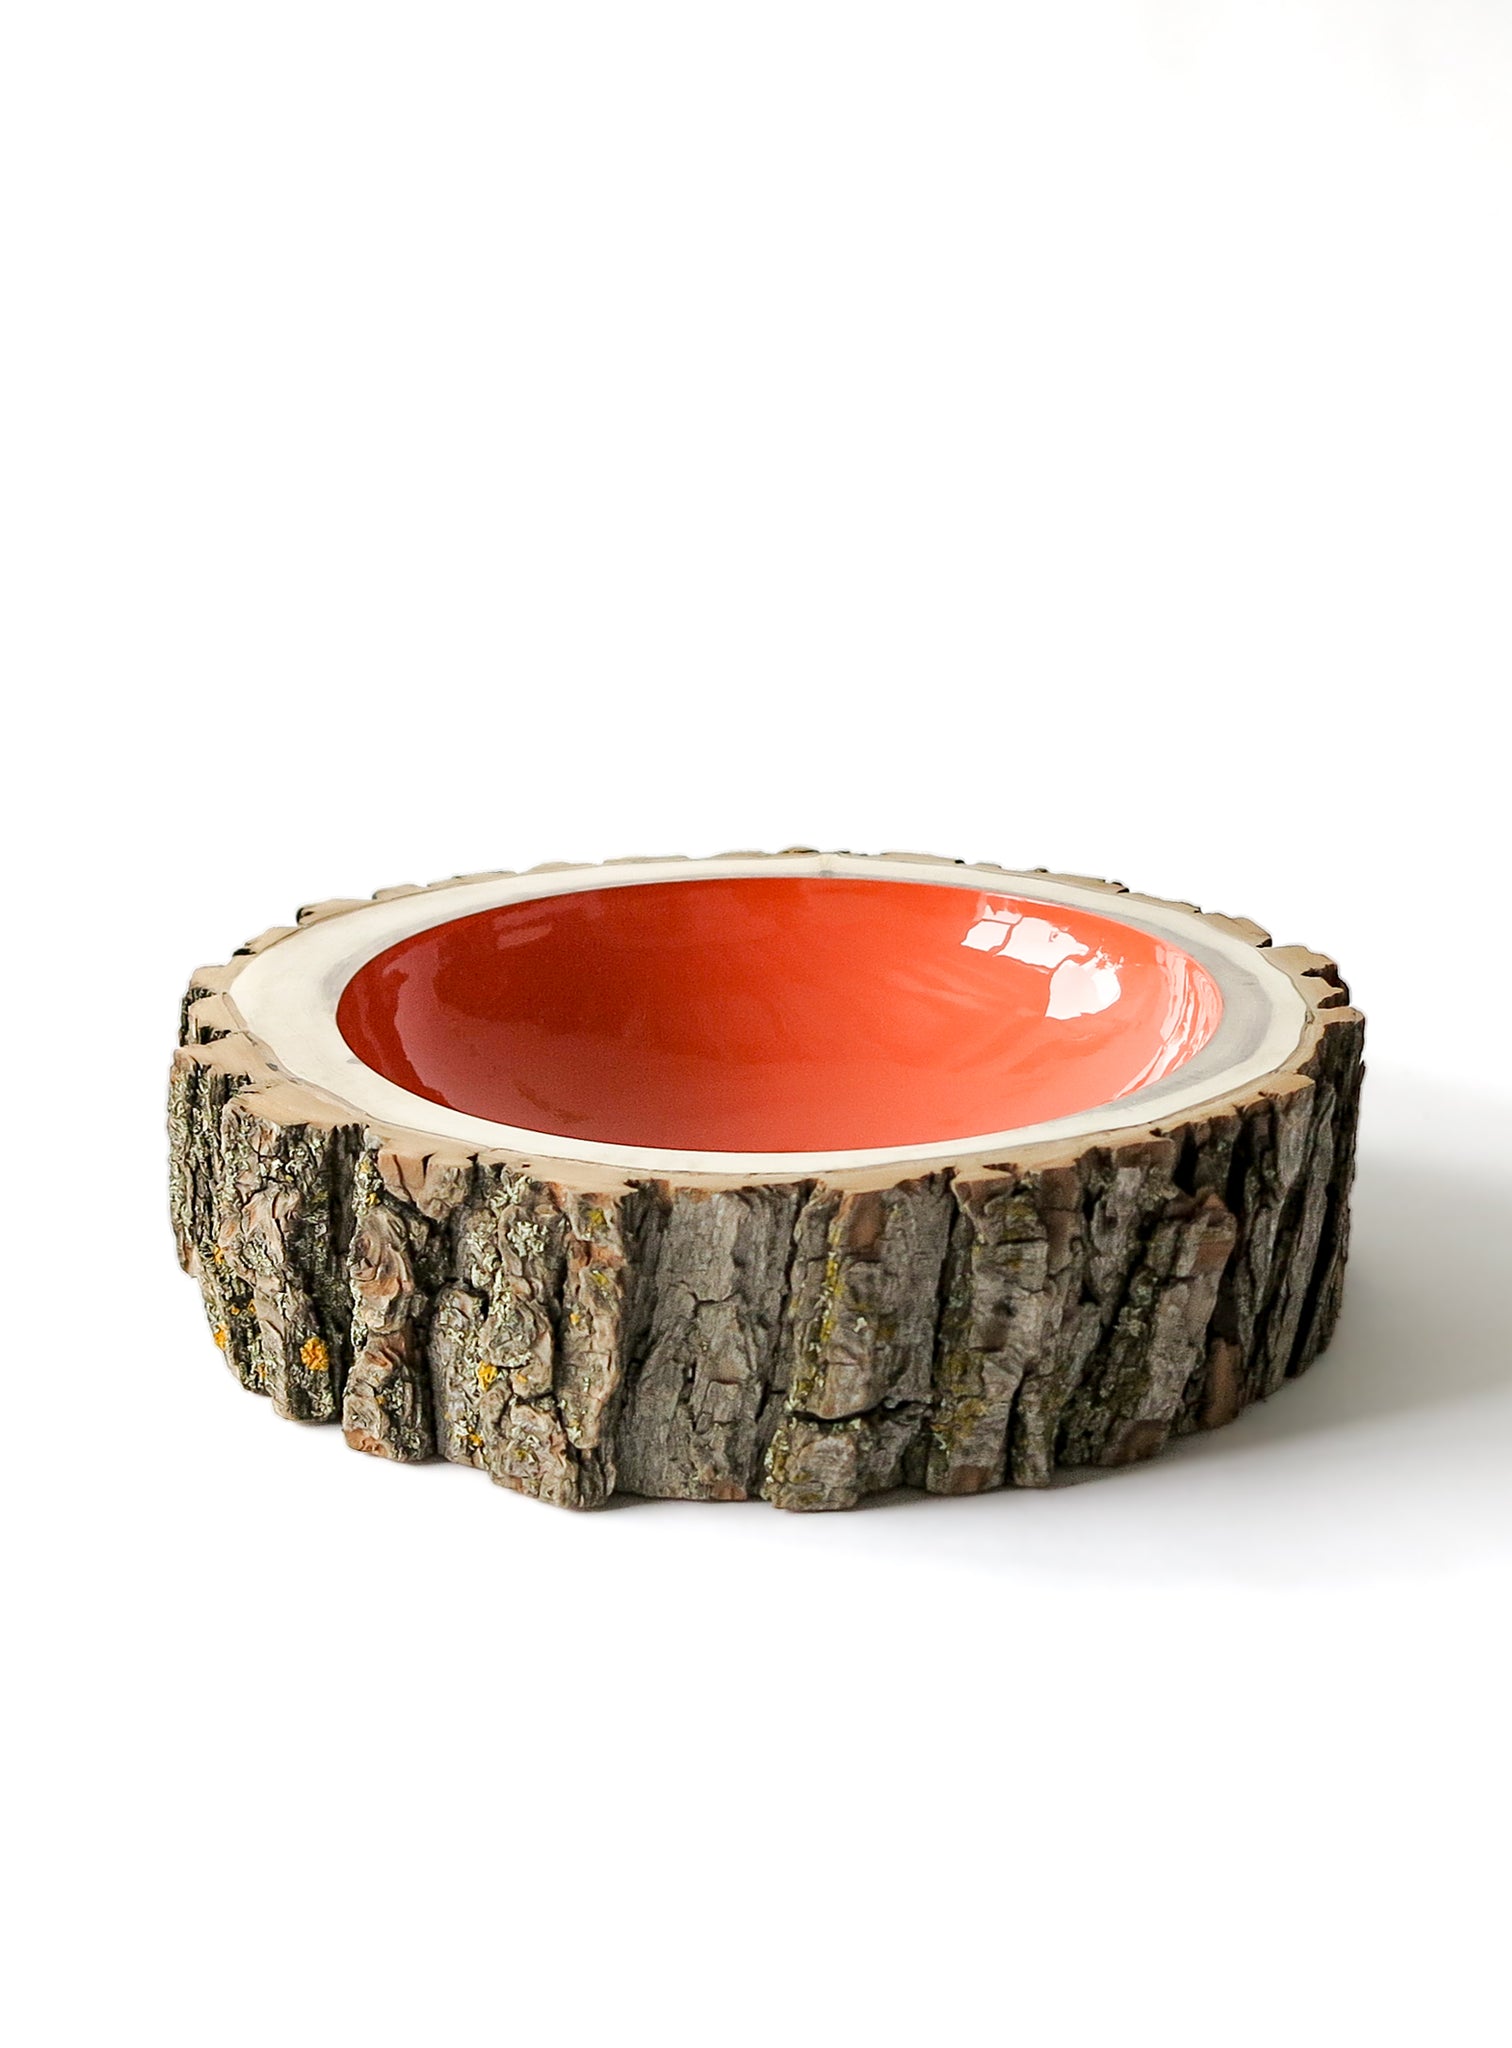 Log Bowl | Size 10 | Coral